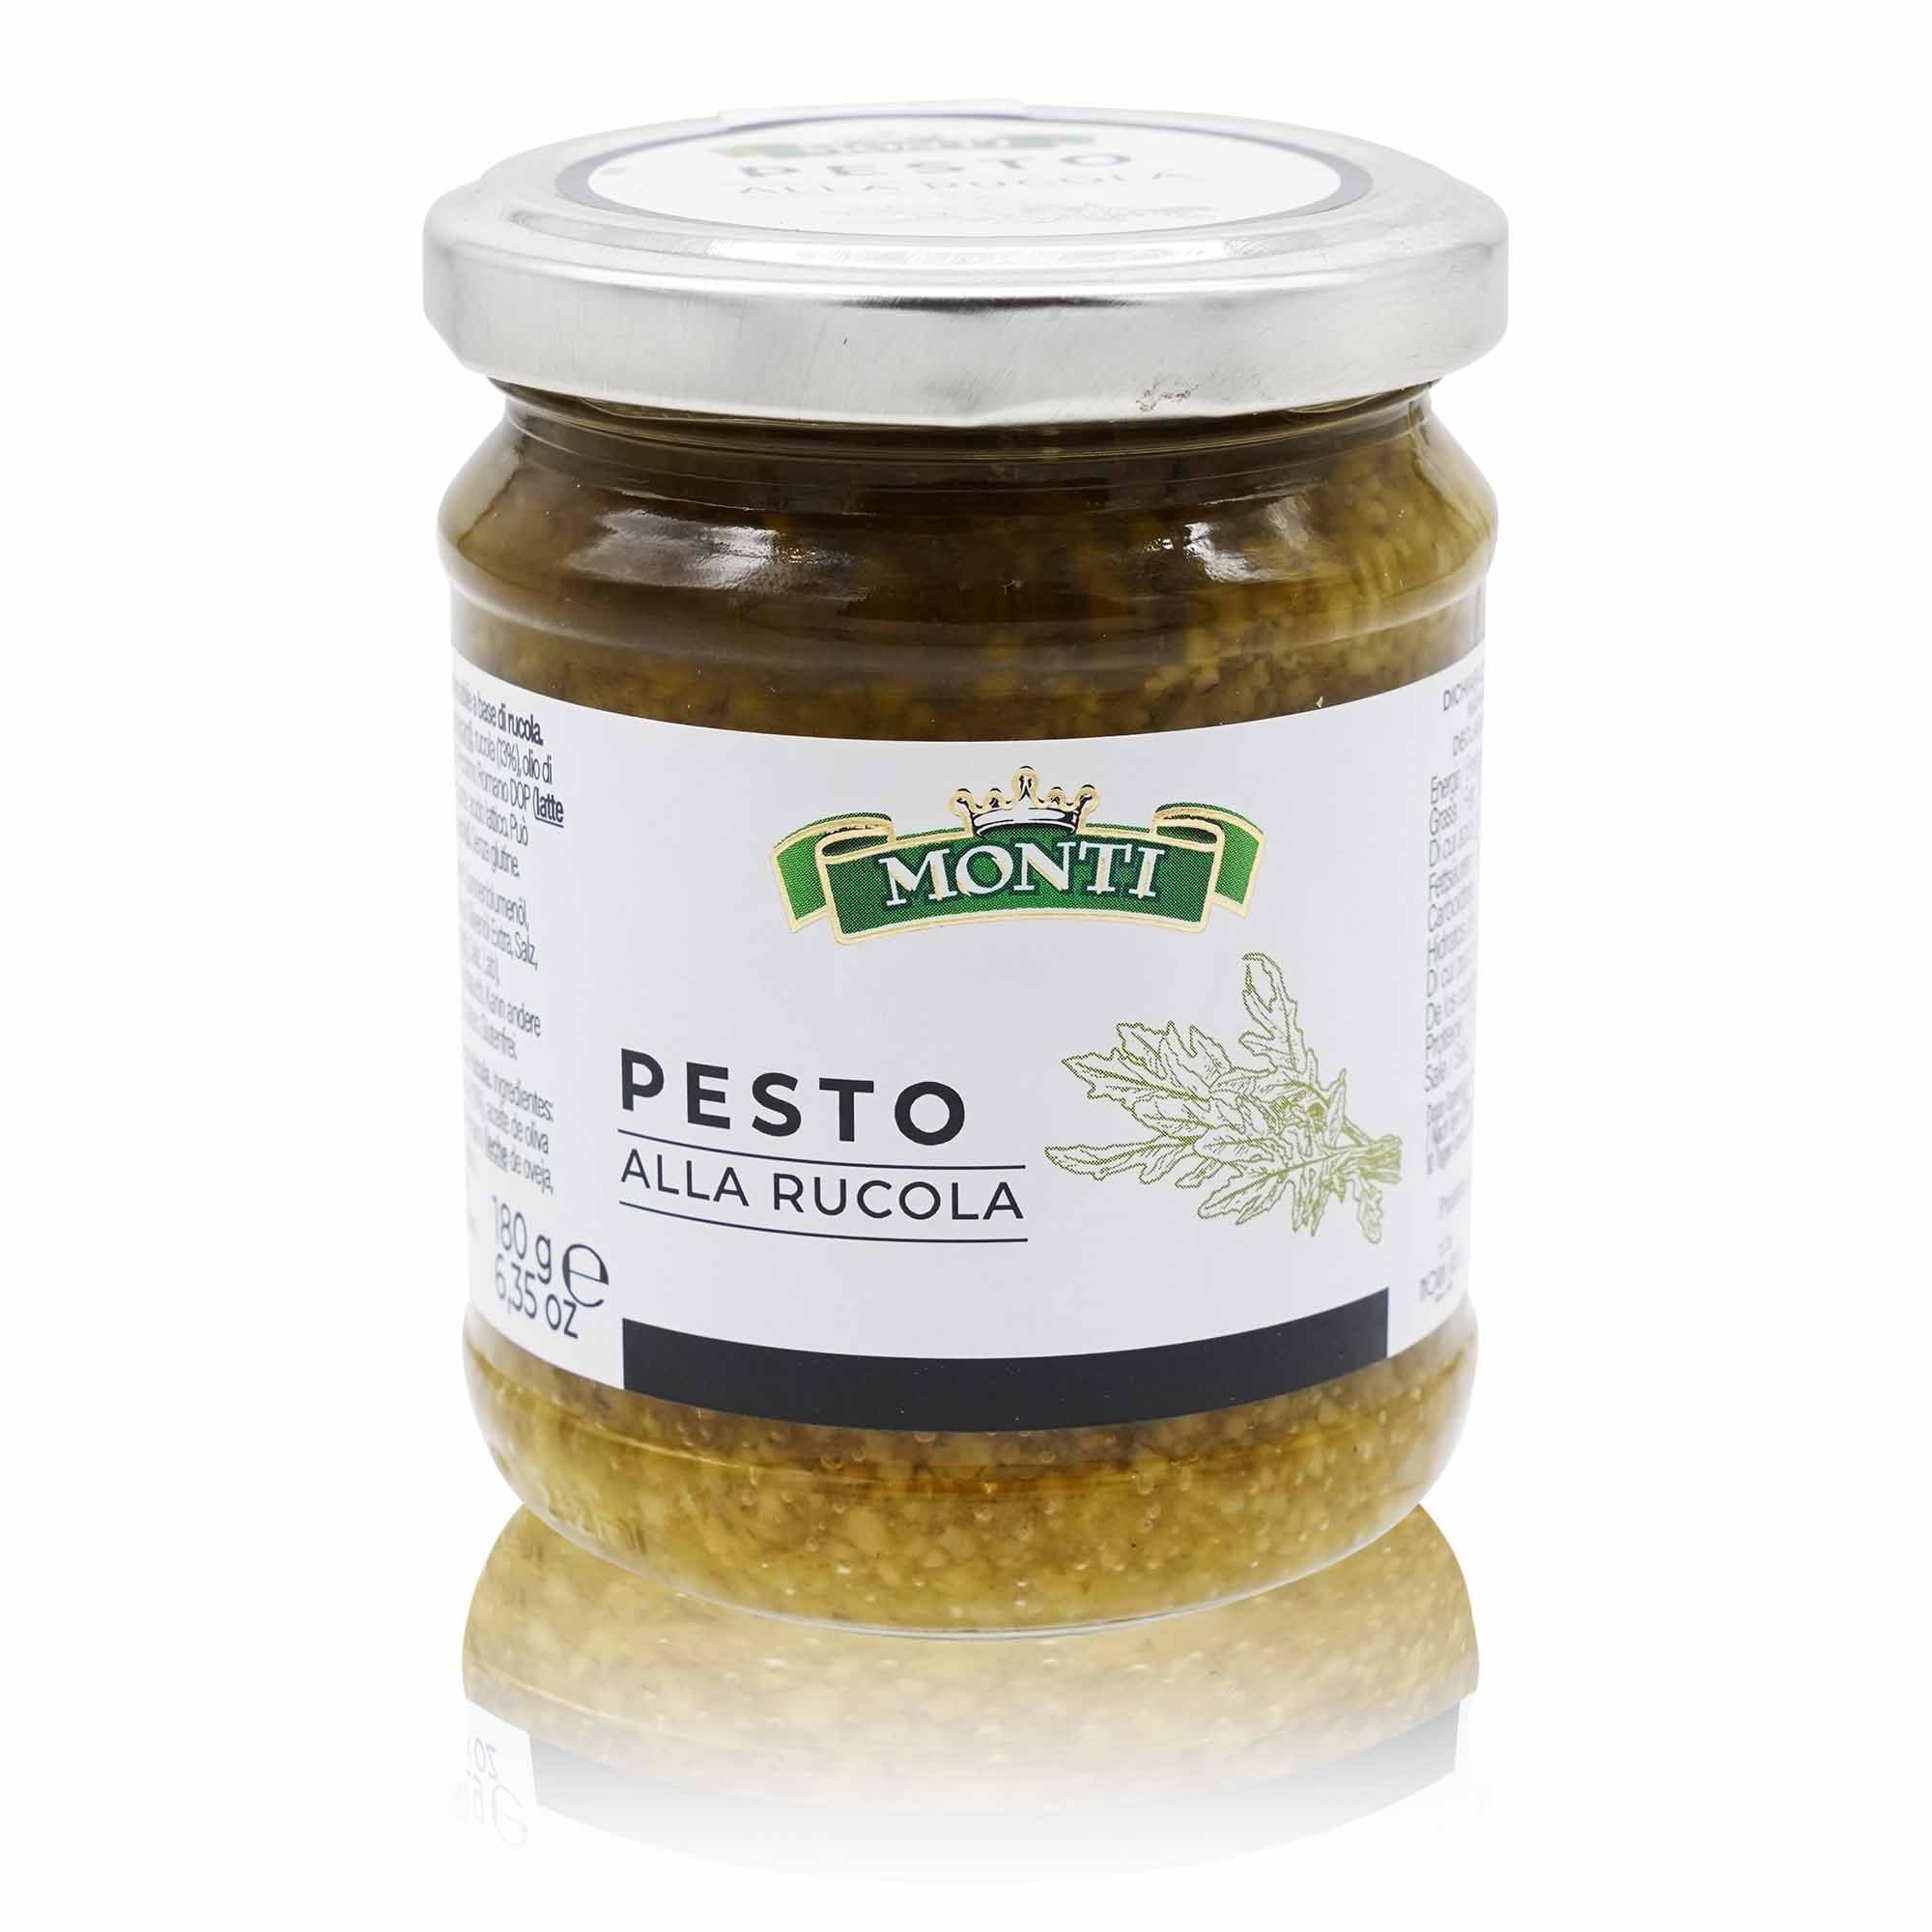 MONTI Pesto alla rucola – Rukolapesto - 0,180kg